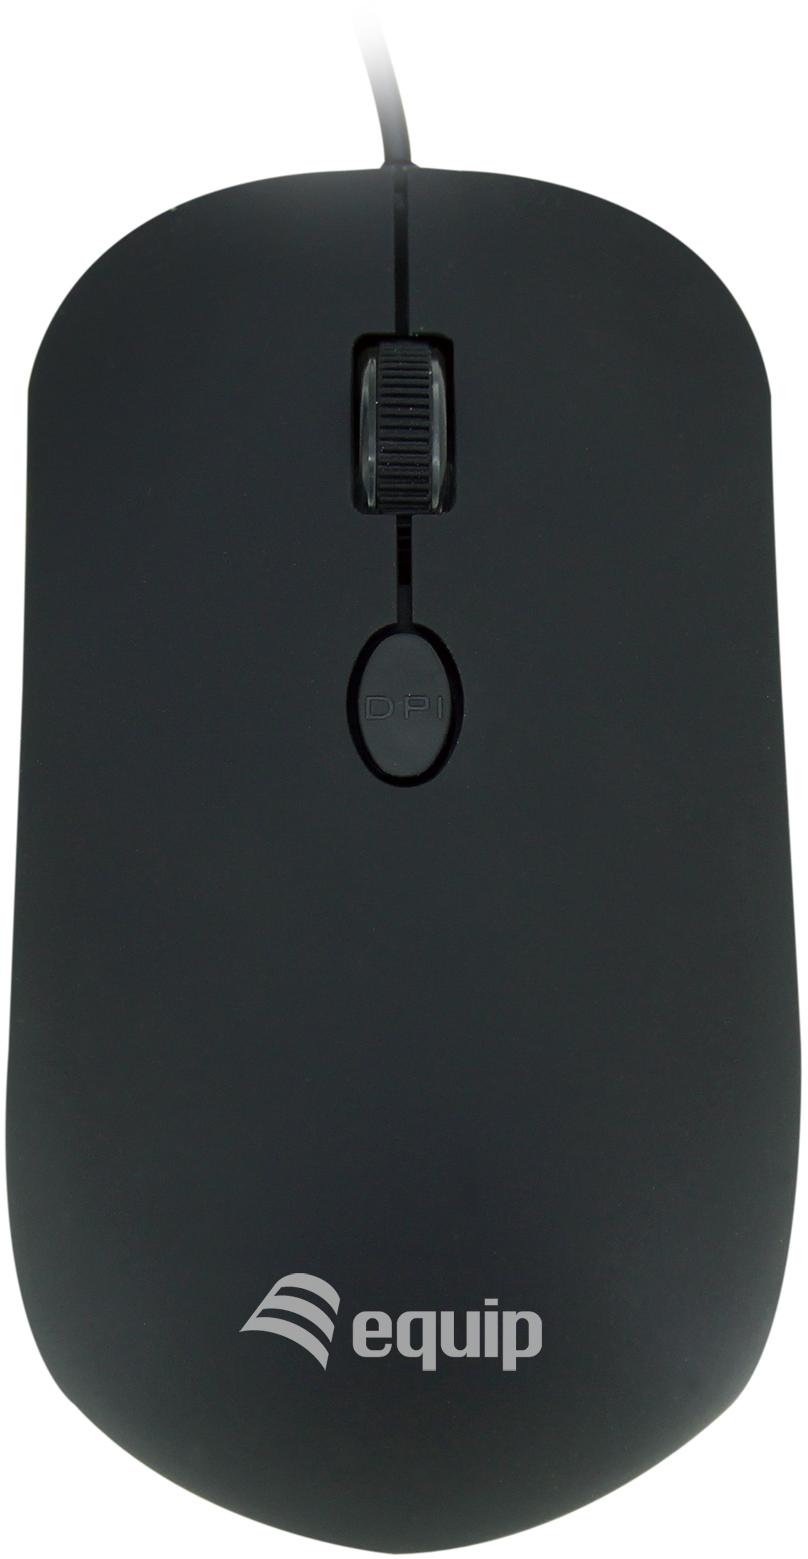 Equip - Rato Equip Comfort USB Preto